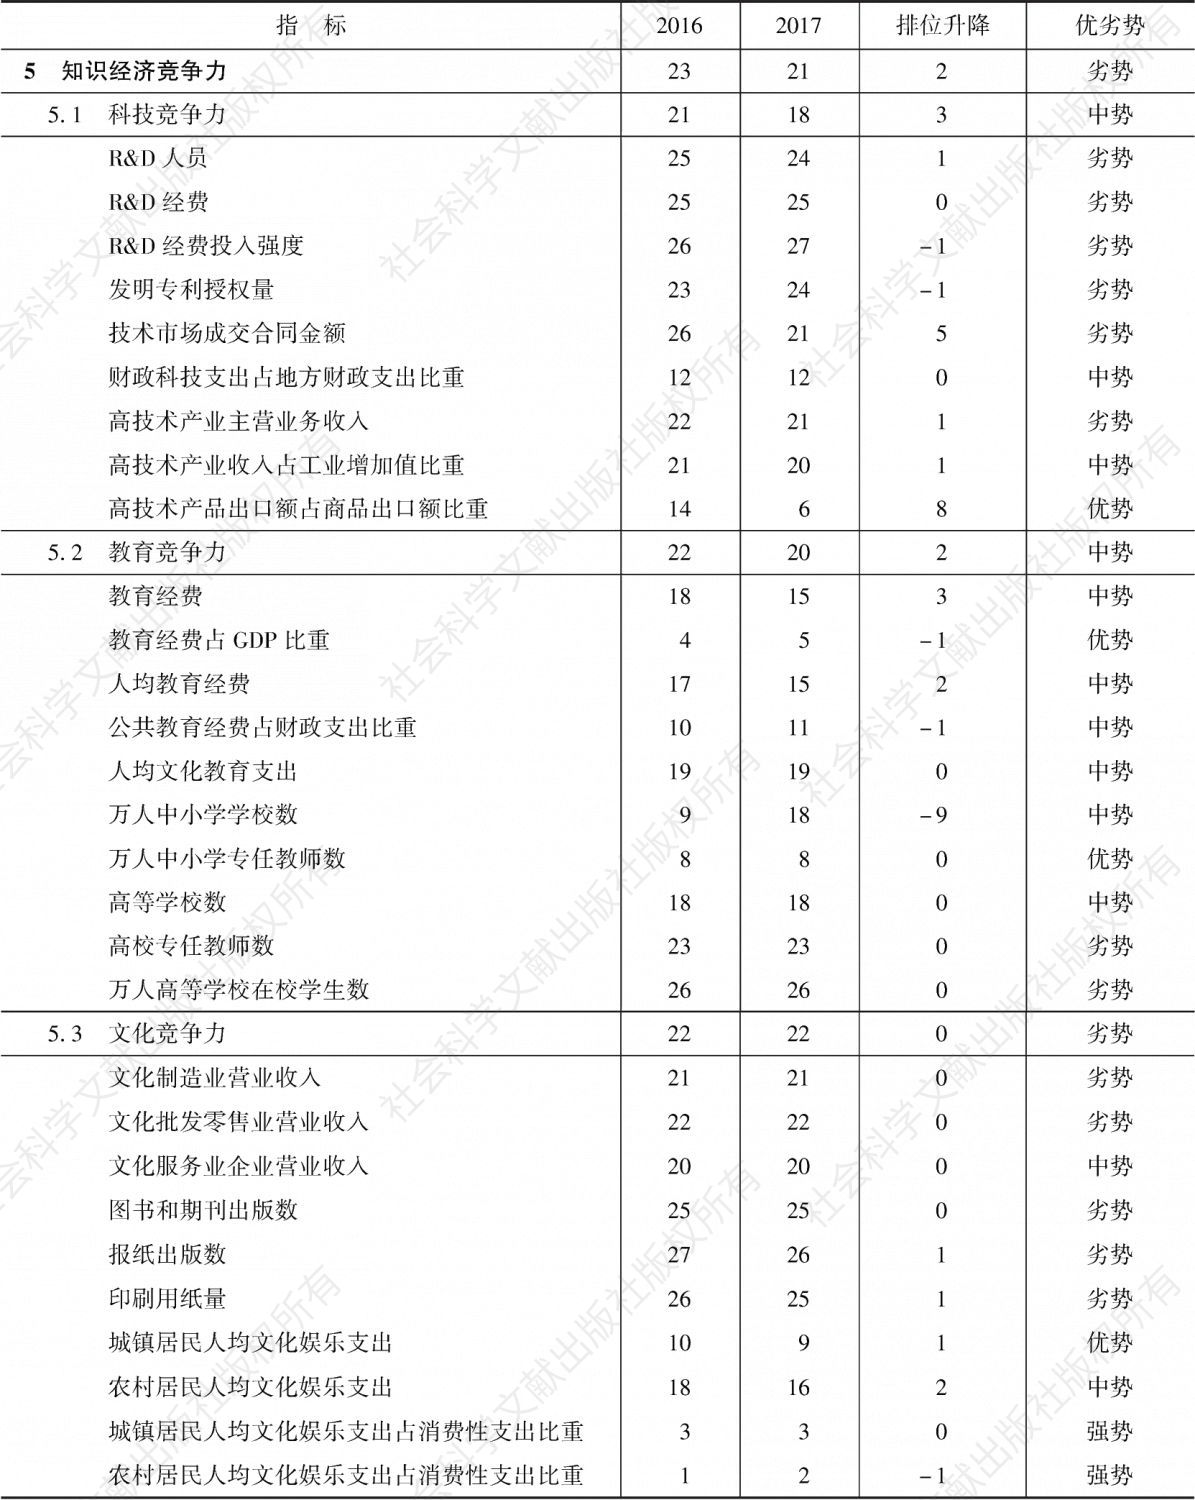 表24-9 2016～2017年贵州省知识经济竞争力指标组排位及变化趋势